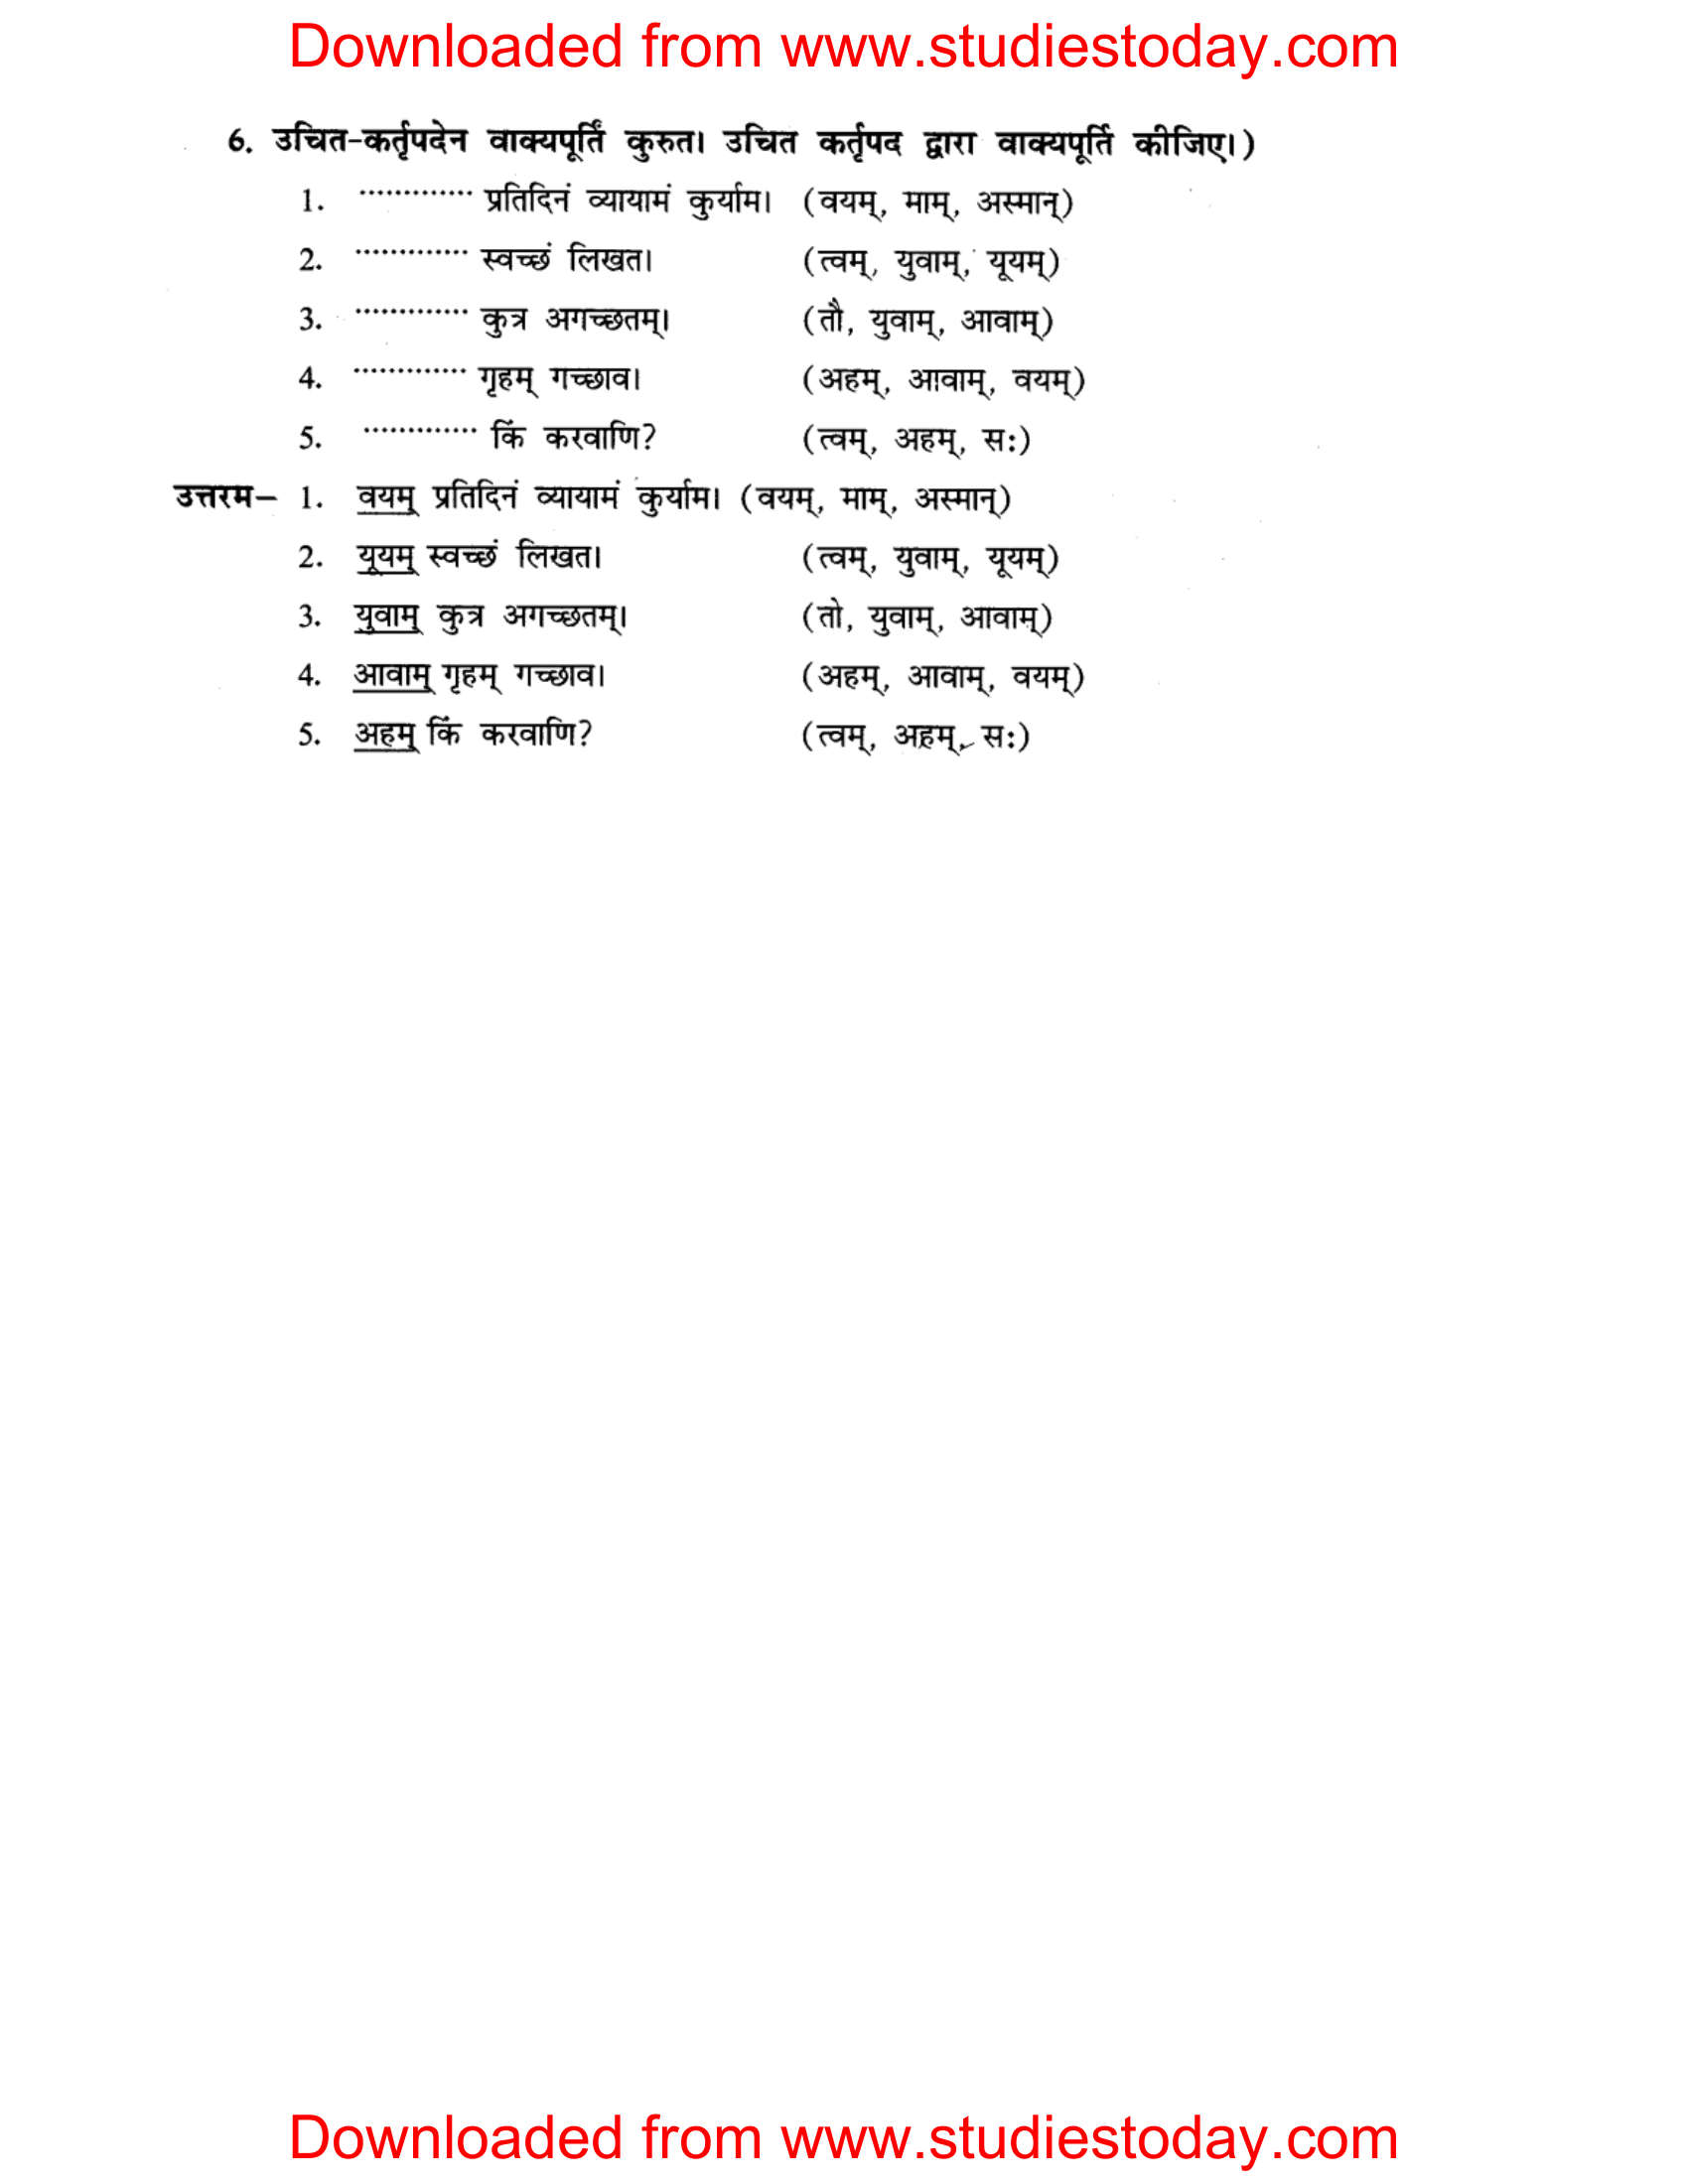 ncert-solutions-class-8-sanskrit-chapter-10-vakyarachna-sudhpryog-4